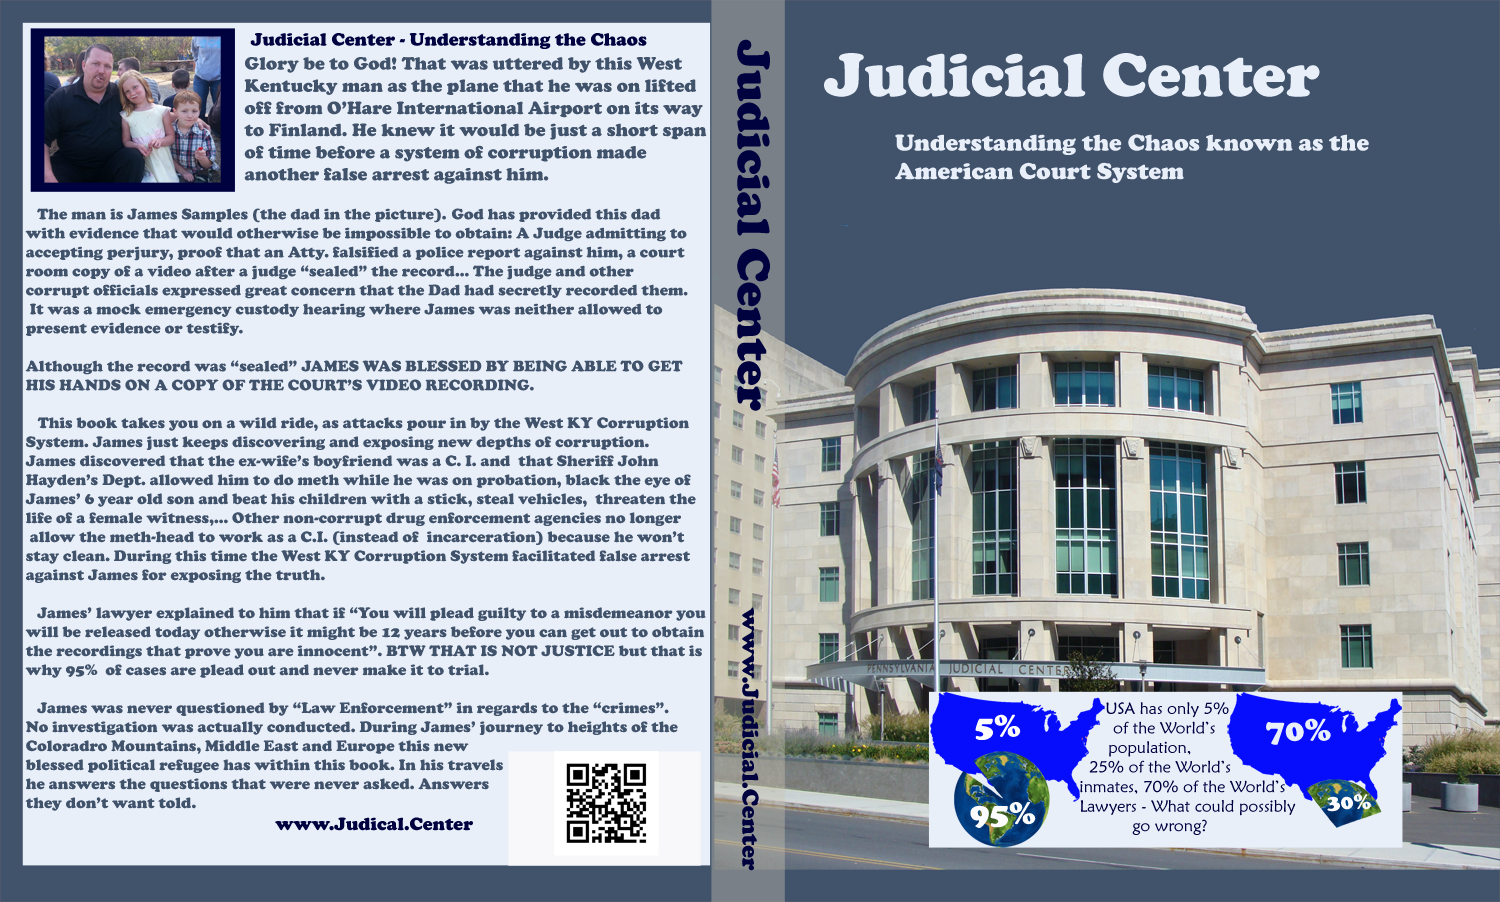 Judicial-Center-Book-Cover-Copy-for-web-1480-wide-